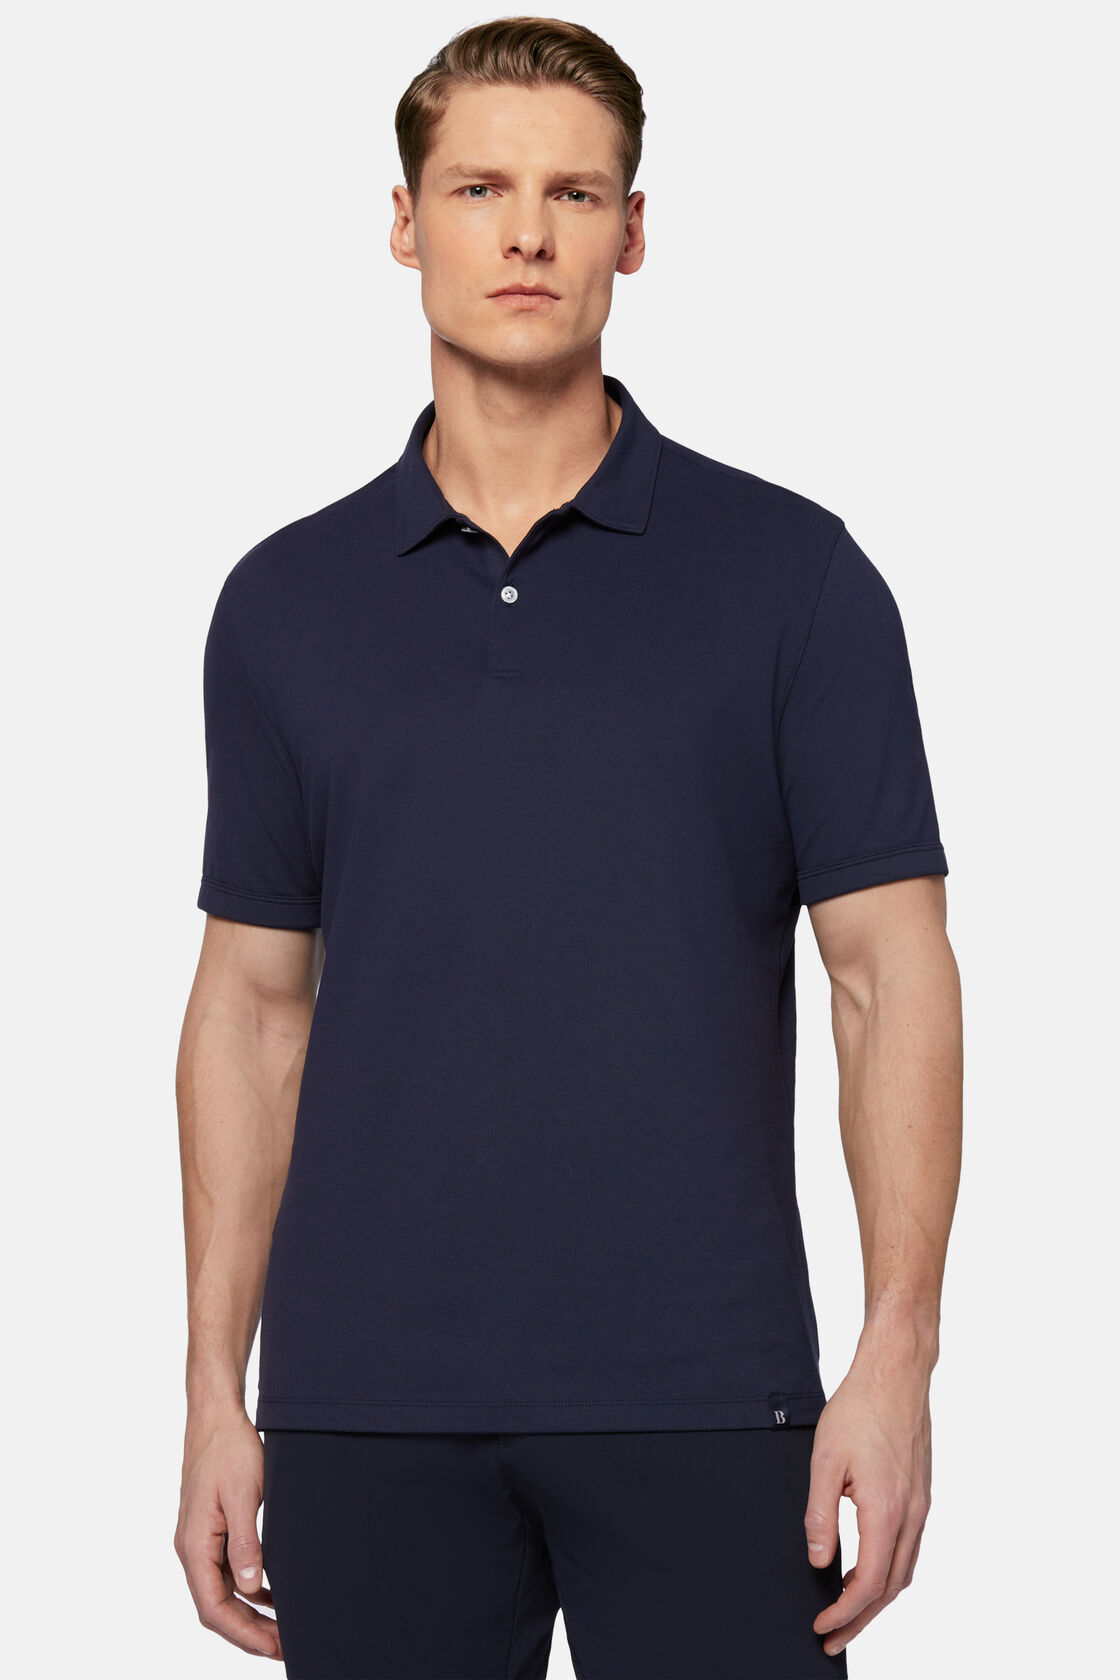 Wiosenna koszulka polo z wytrzymałej piki, Navy blue, hi-res